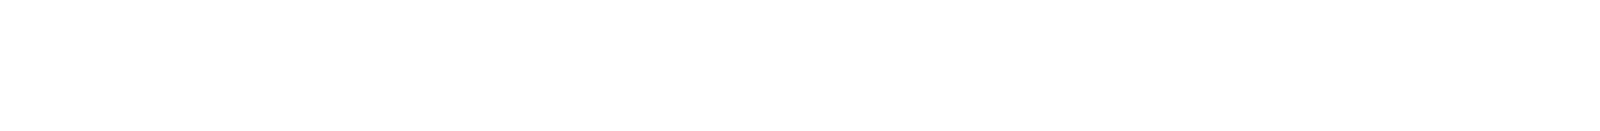 The Shyft Group logo large for dark backgrounds (transparent PNG)